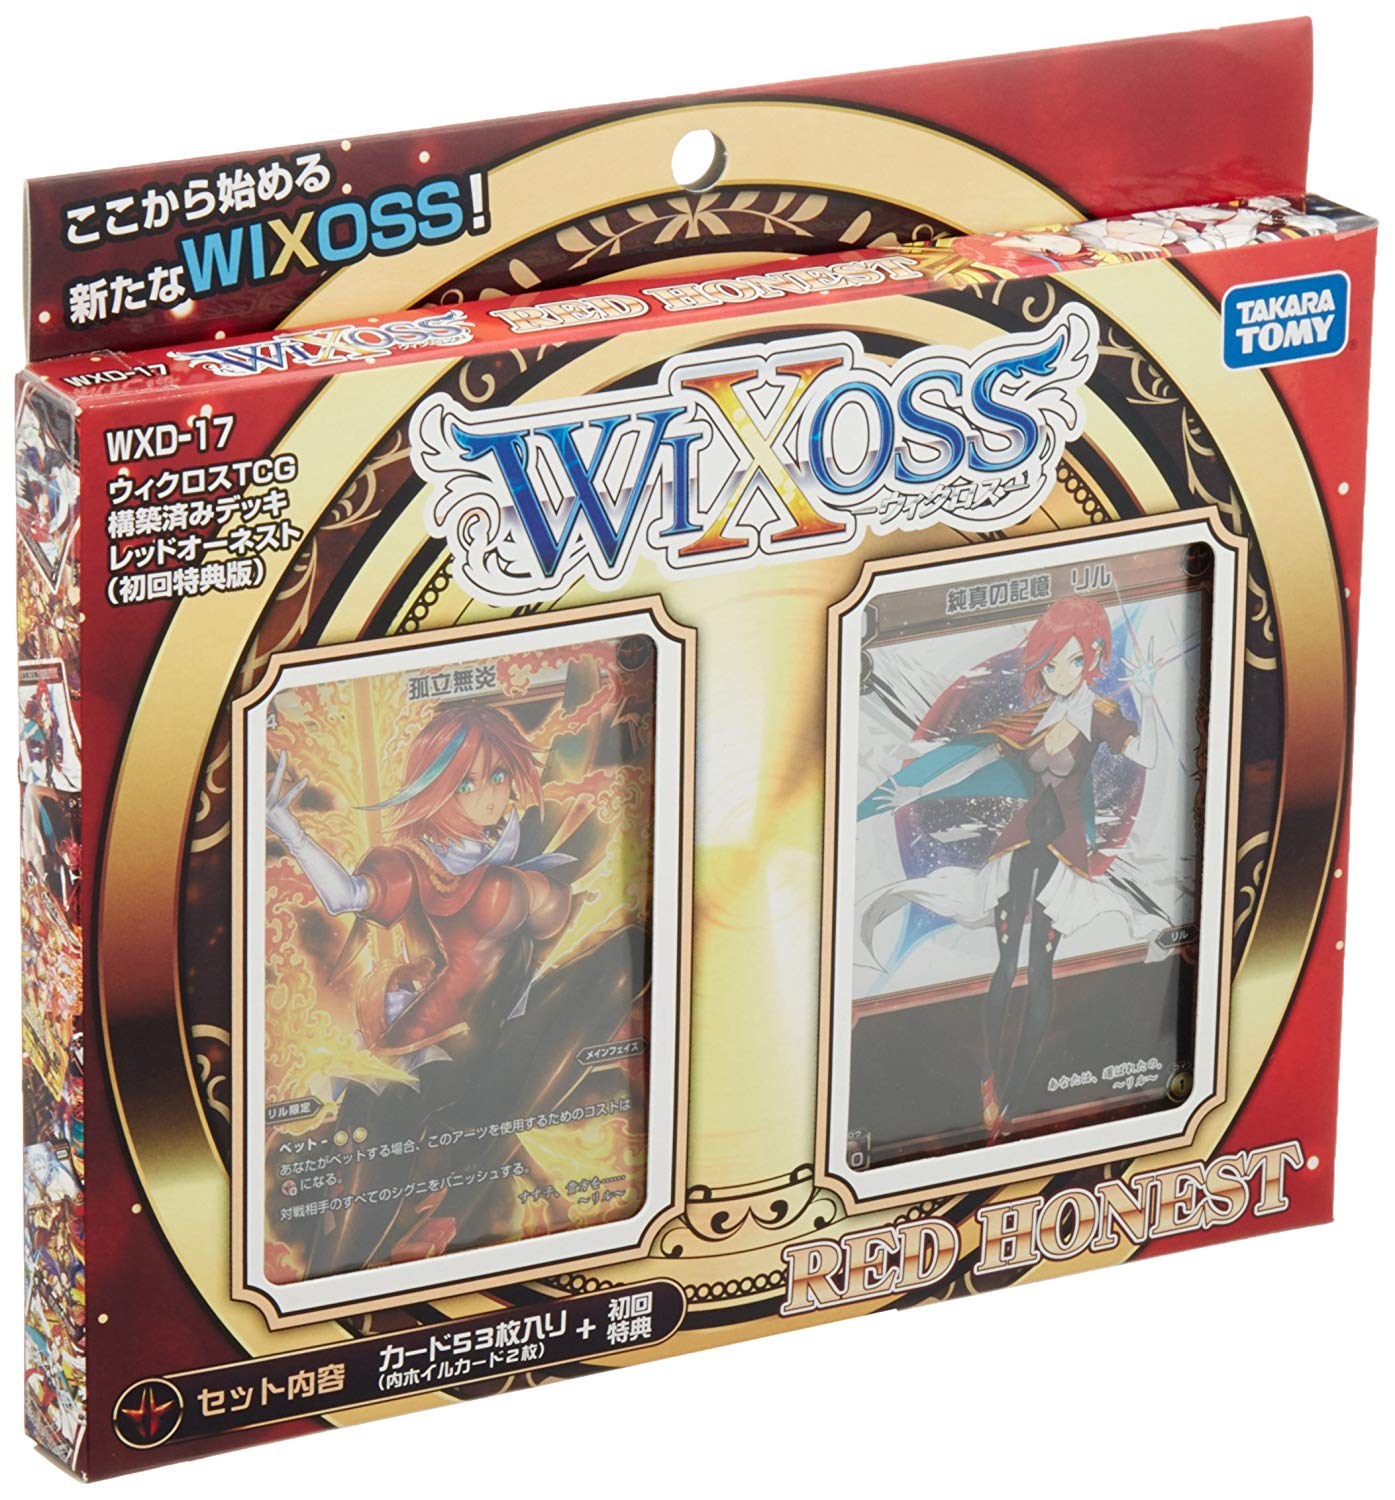 【倉庫在庫】WIXOSS -ウィクロス- 構築済みデッキ レッドオーネスト (初回特典版) WXD-17